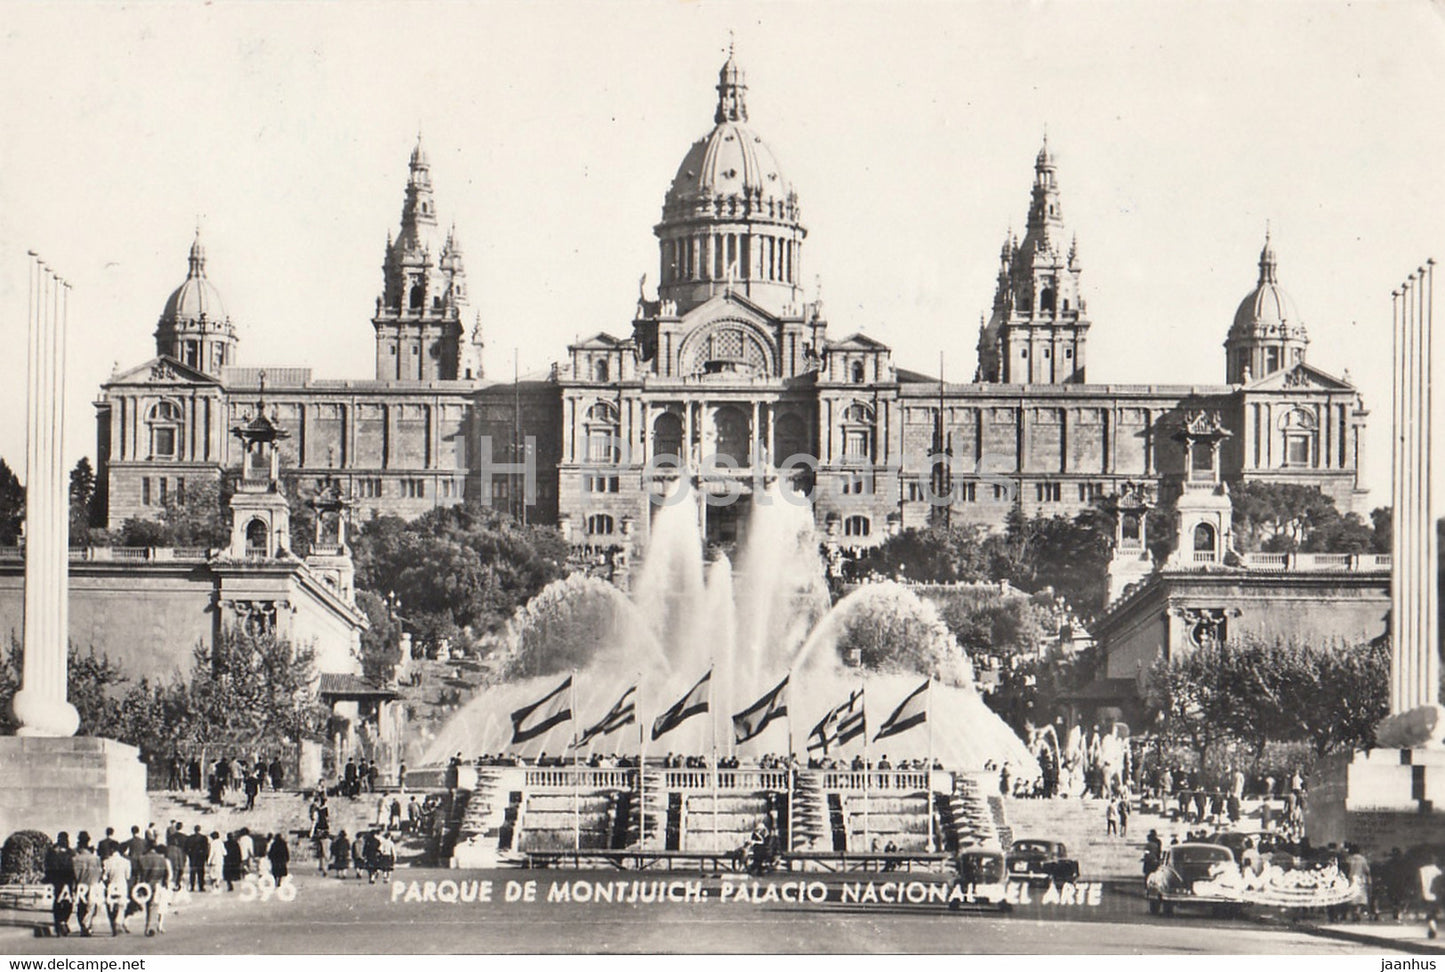 Barcelona - Parque de Montjuich - Palacio Nacional del Arte - 596 - old postcard - Spain - used - JH Postcards